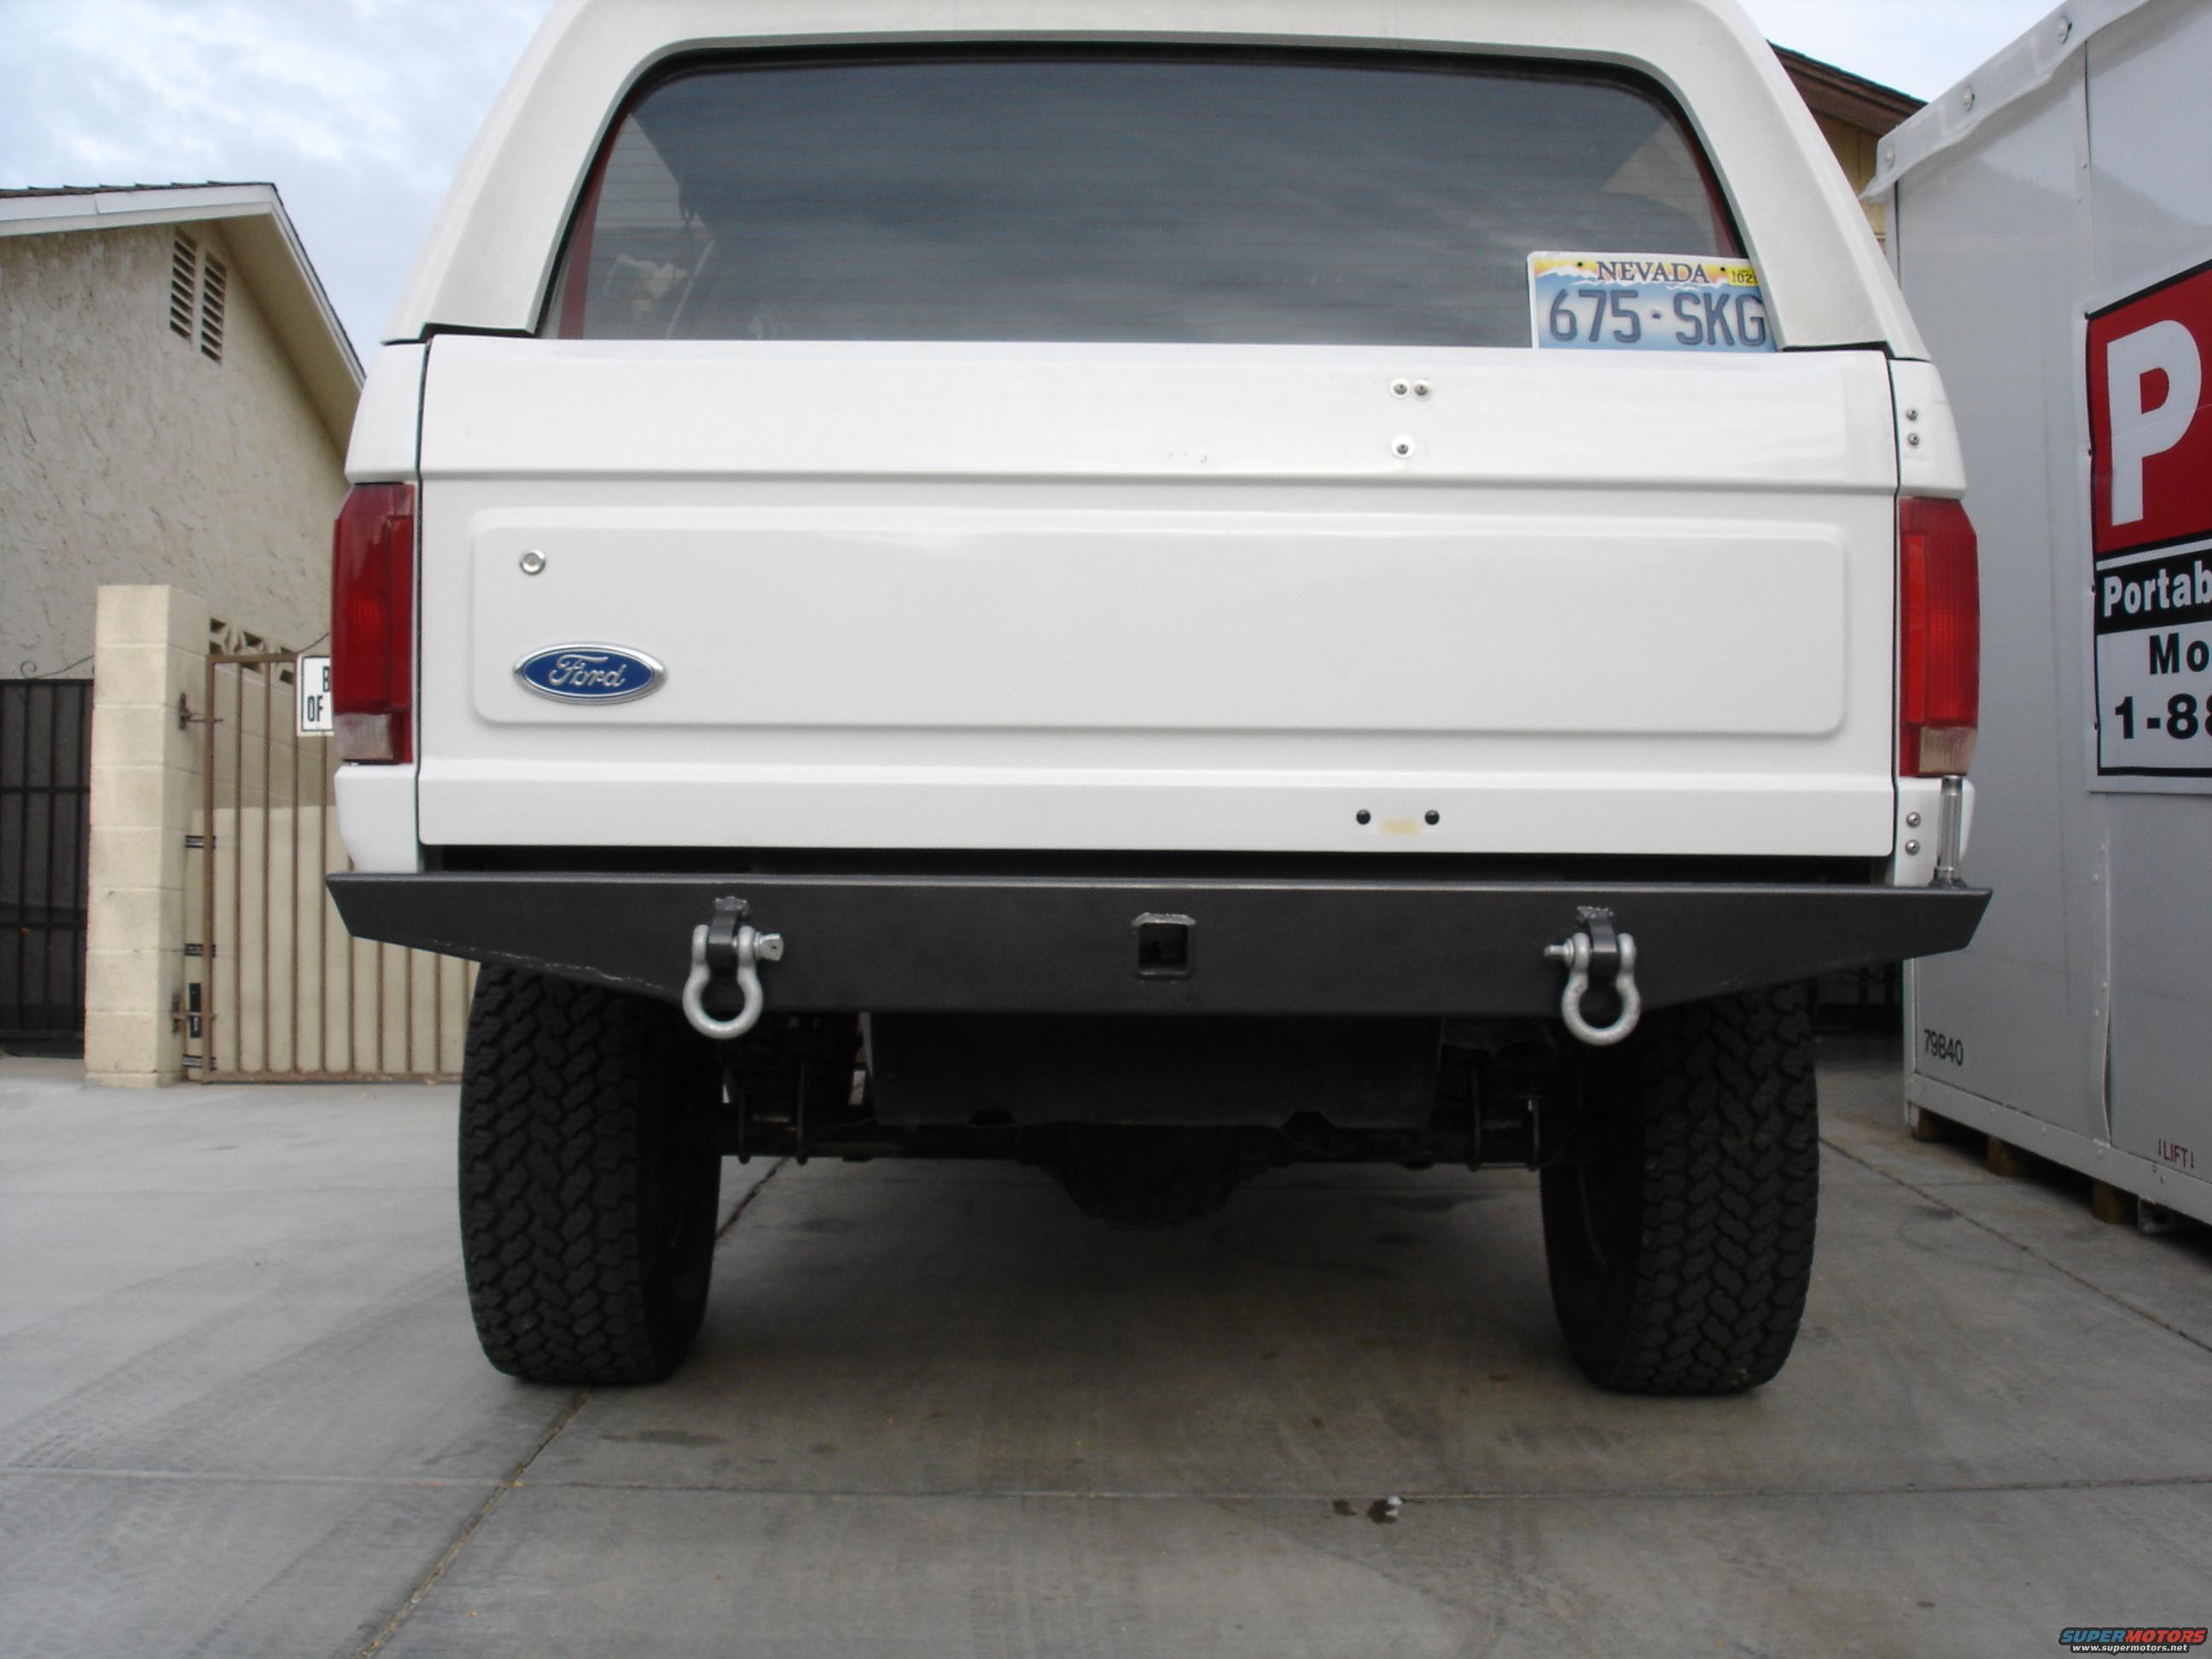 1996 Ford bronco bumper #3